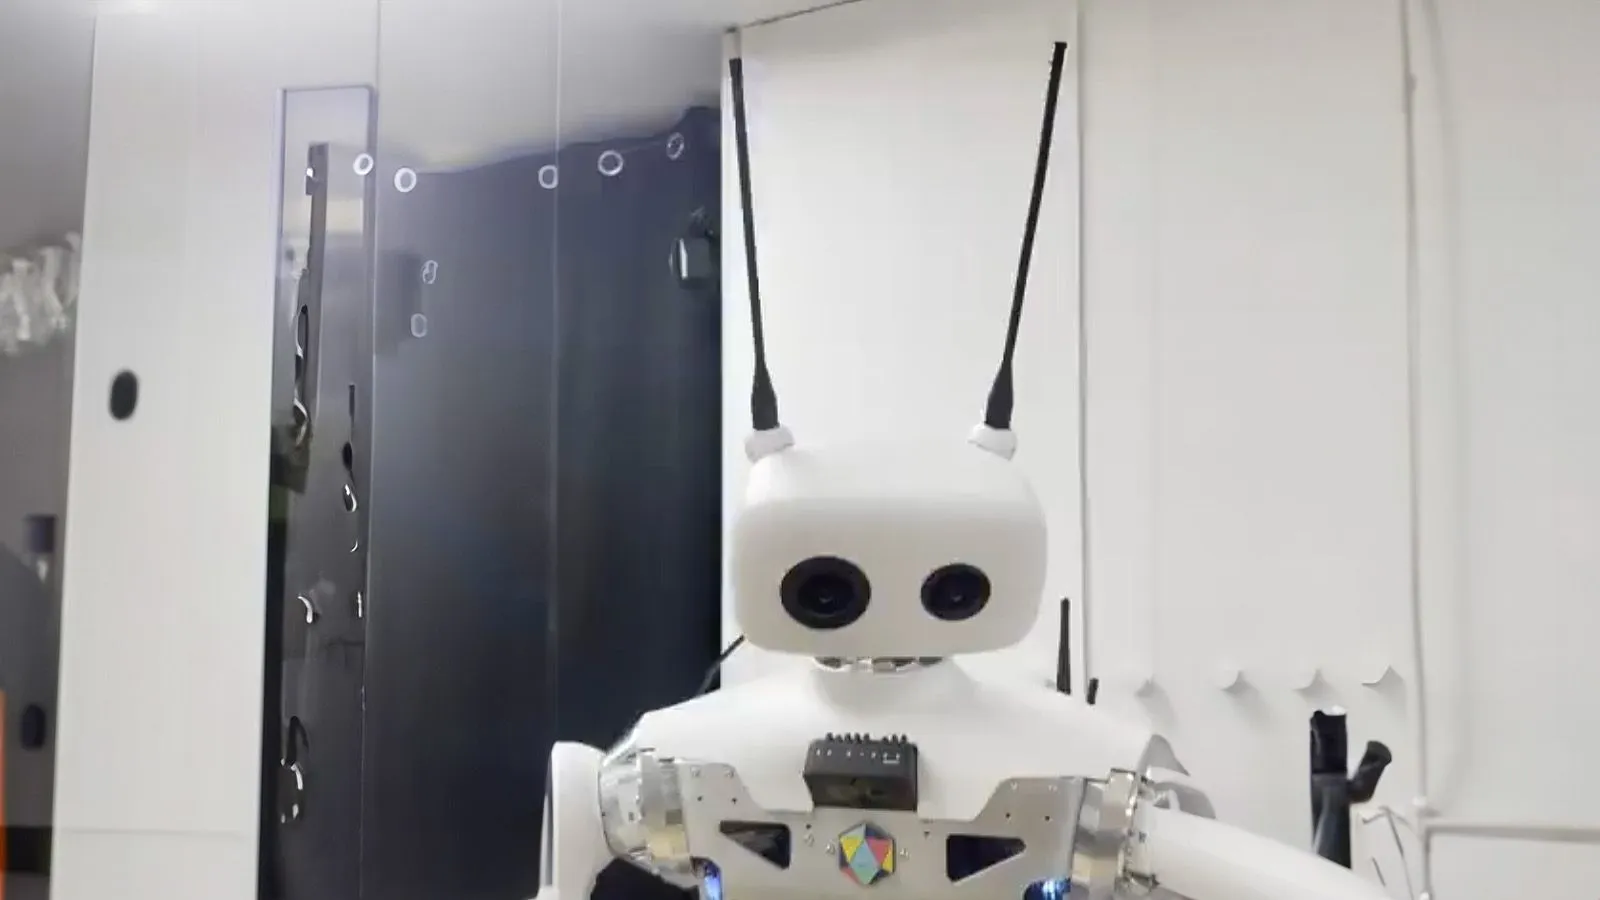 dit is de nieuwe robot met ai hugging face en pollen robotics